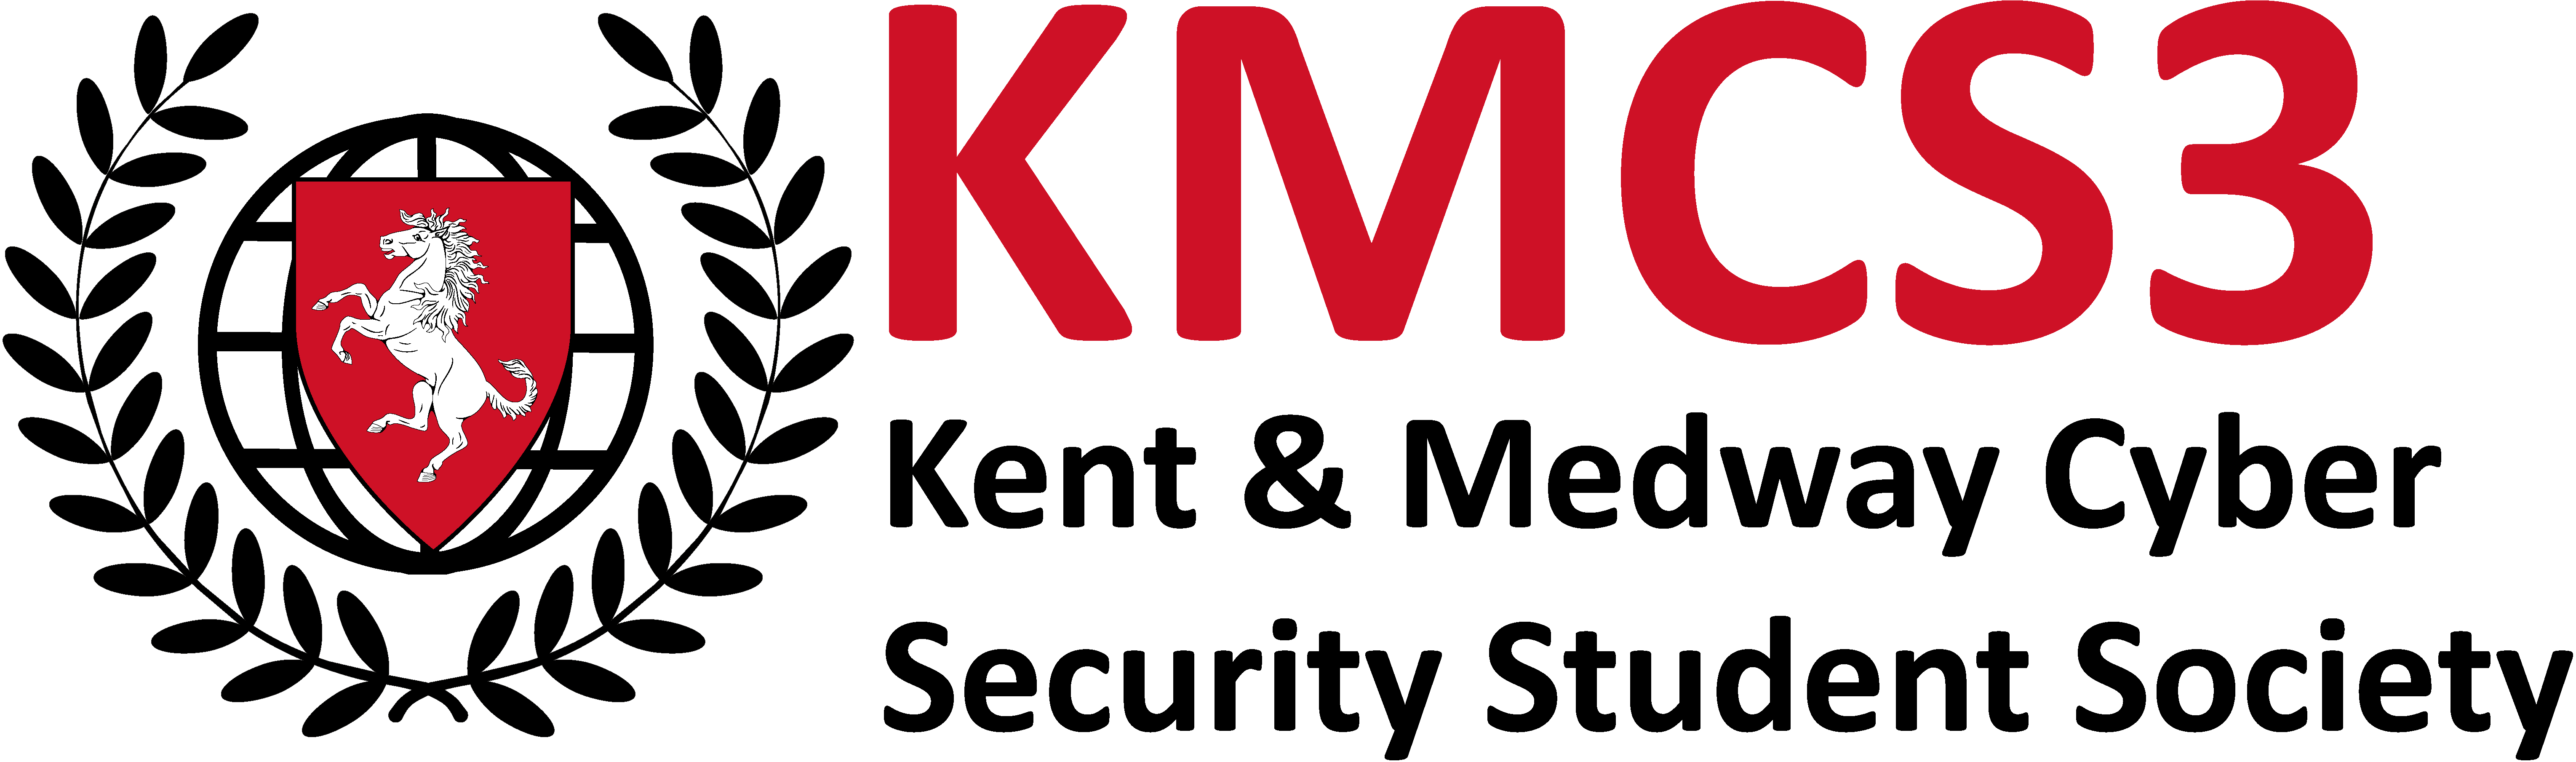 KMCS3 logo